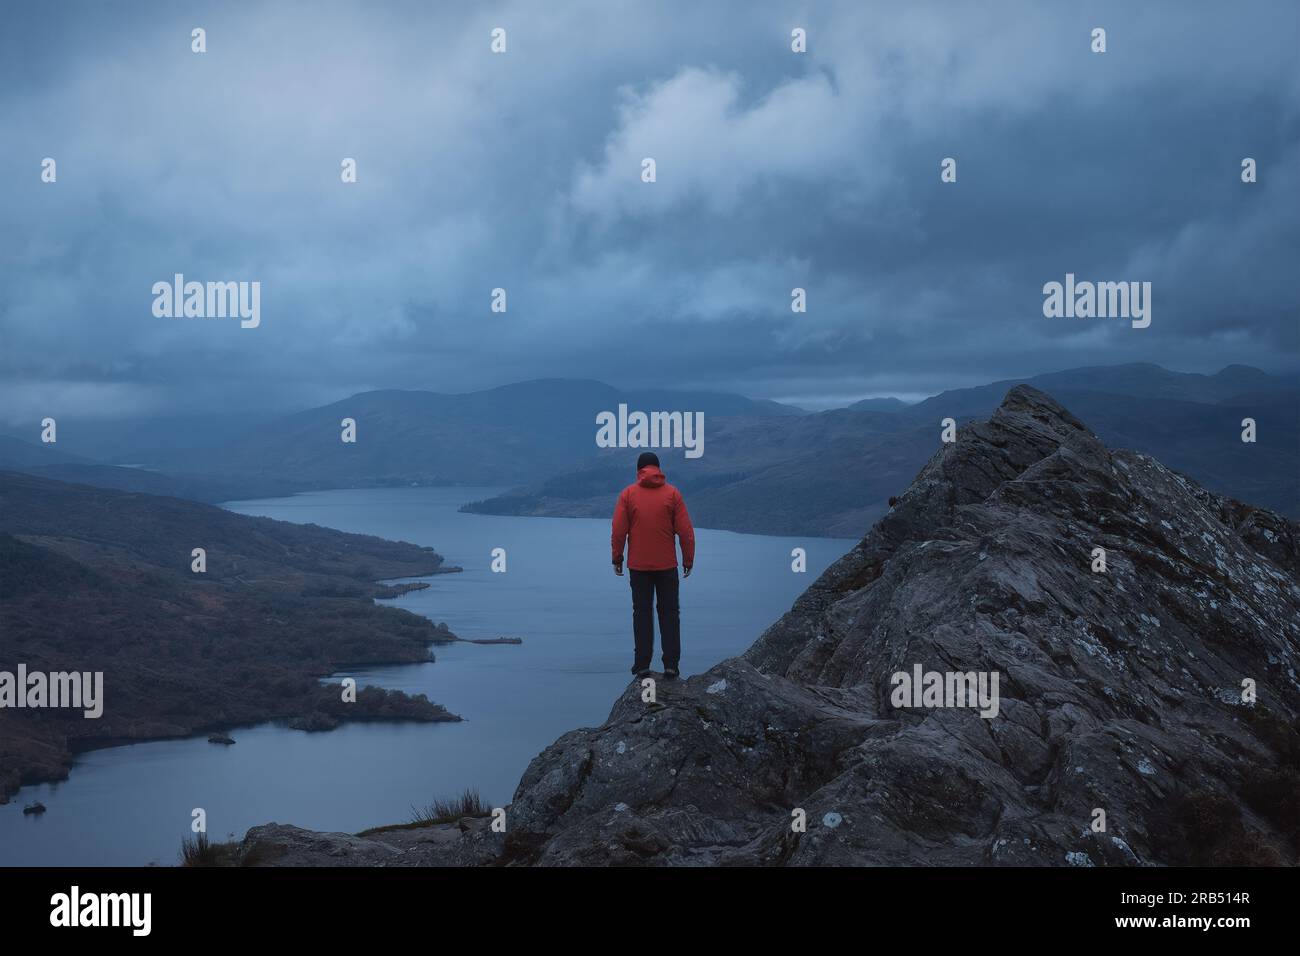 Un randonneur dans une veste rouge au sommet d'une montagne donne sur le paysage magnifique d'un lac entouré de montagnes. Loch Katrine. Loch Lomond et le parc national des Trossachs. Écosse Banque D'Images